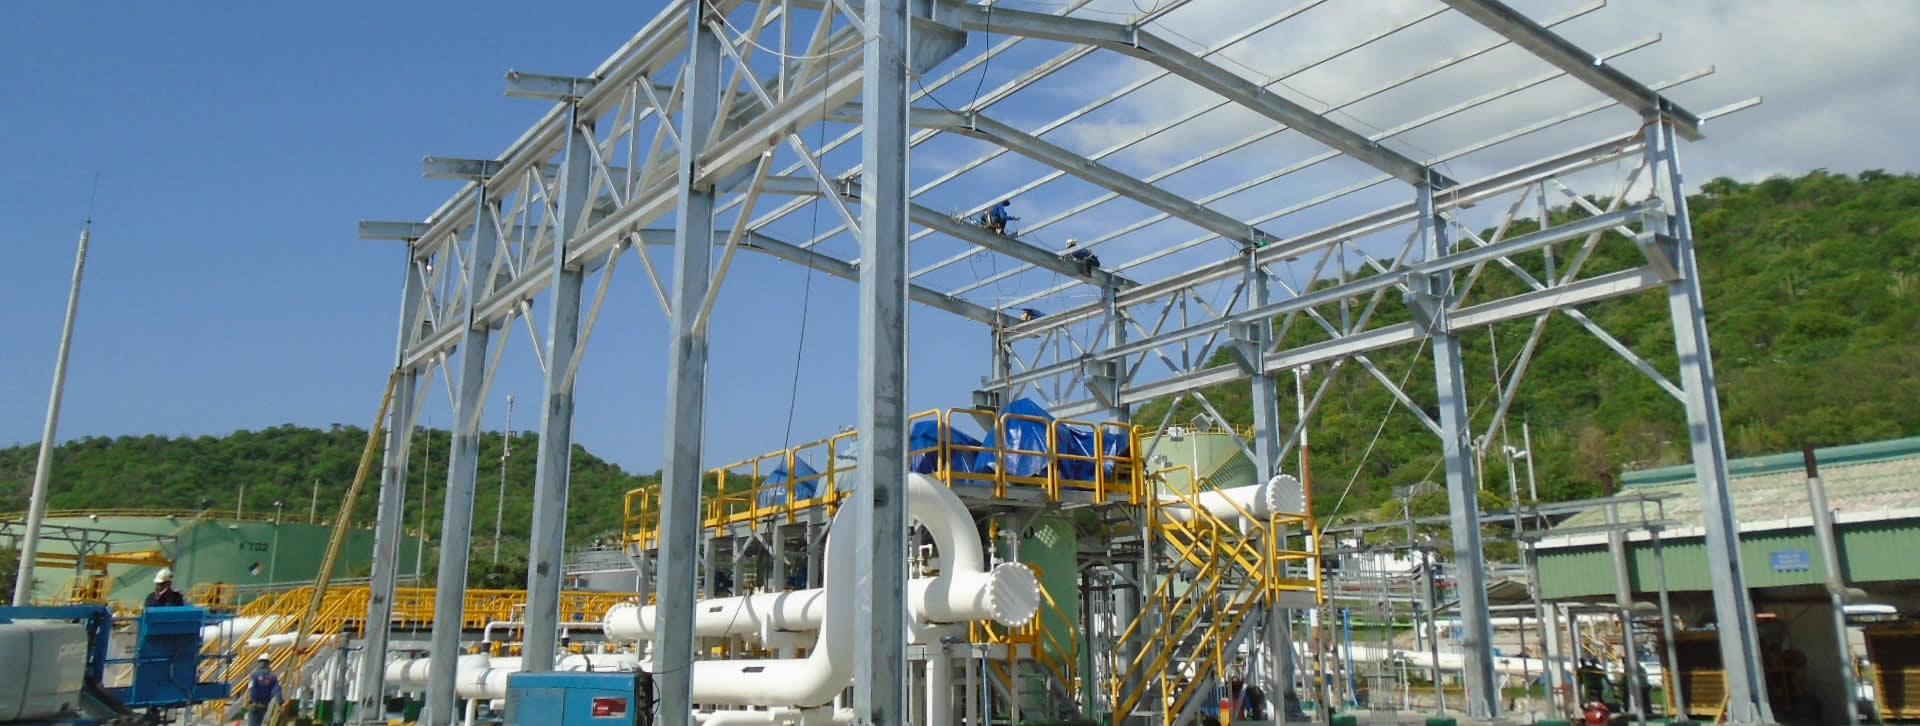 Morelco: Ampliación de la capacidad de bombeo a 130 KBDC del poliducto Pozos Colorados-Galán para Ecopetrol en el departamento de Santander, Colombia